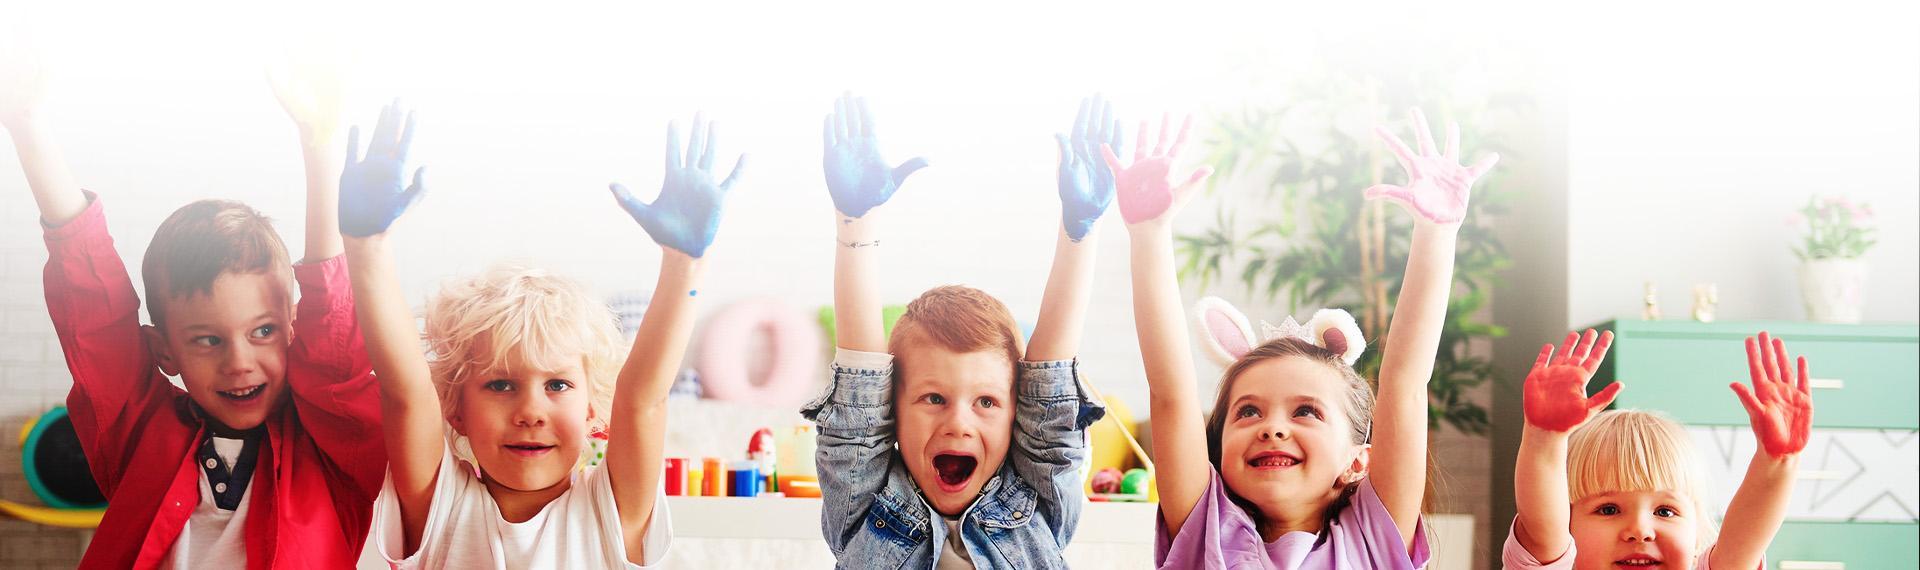 Dzieci z pomalowanymi dłońmi Slajd #1